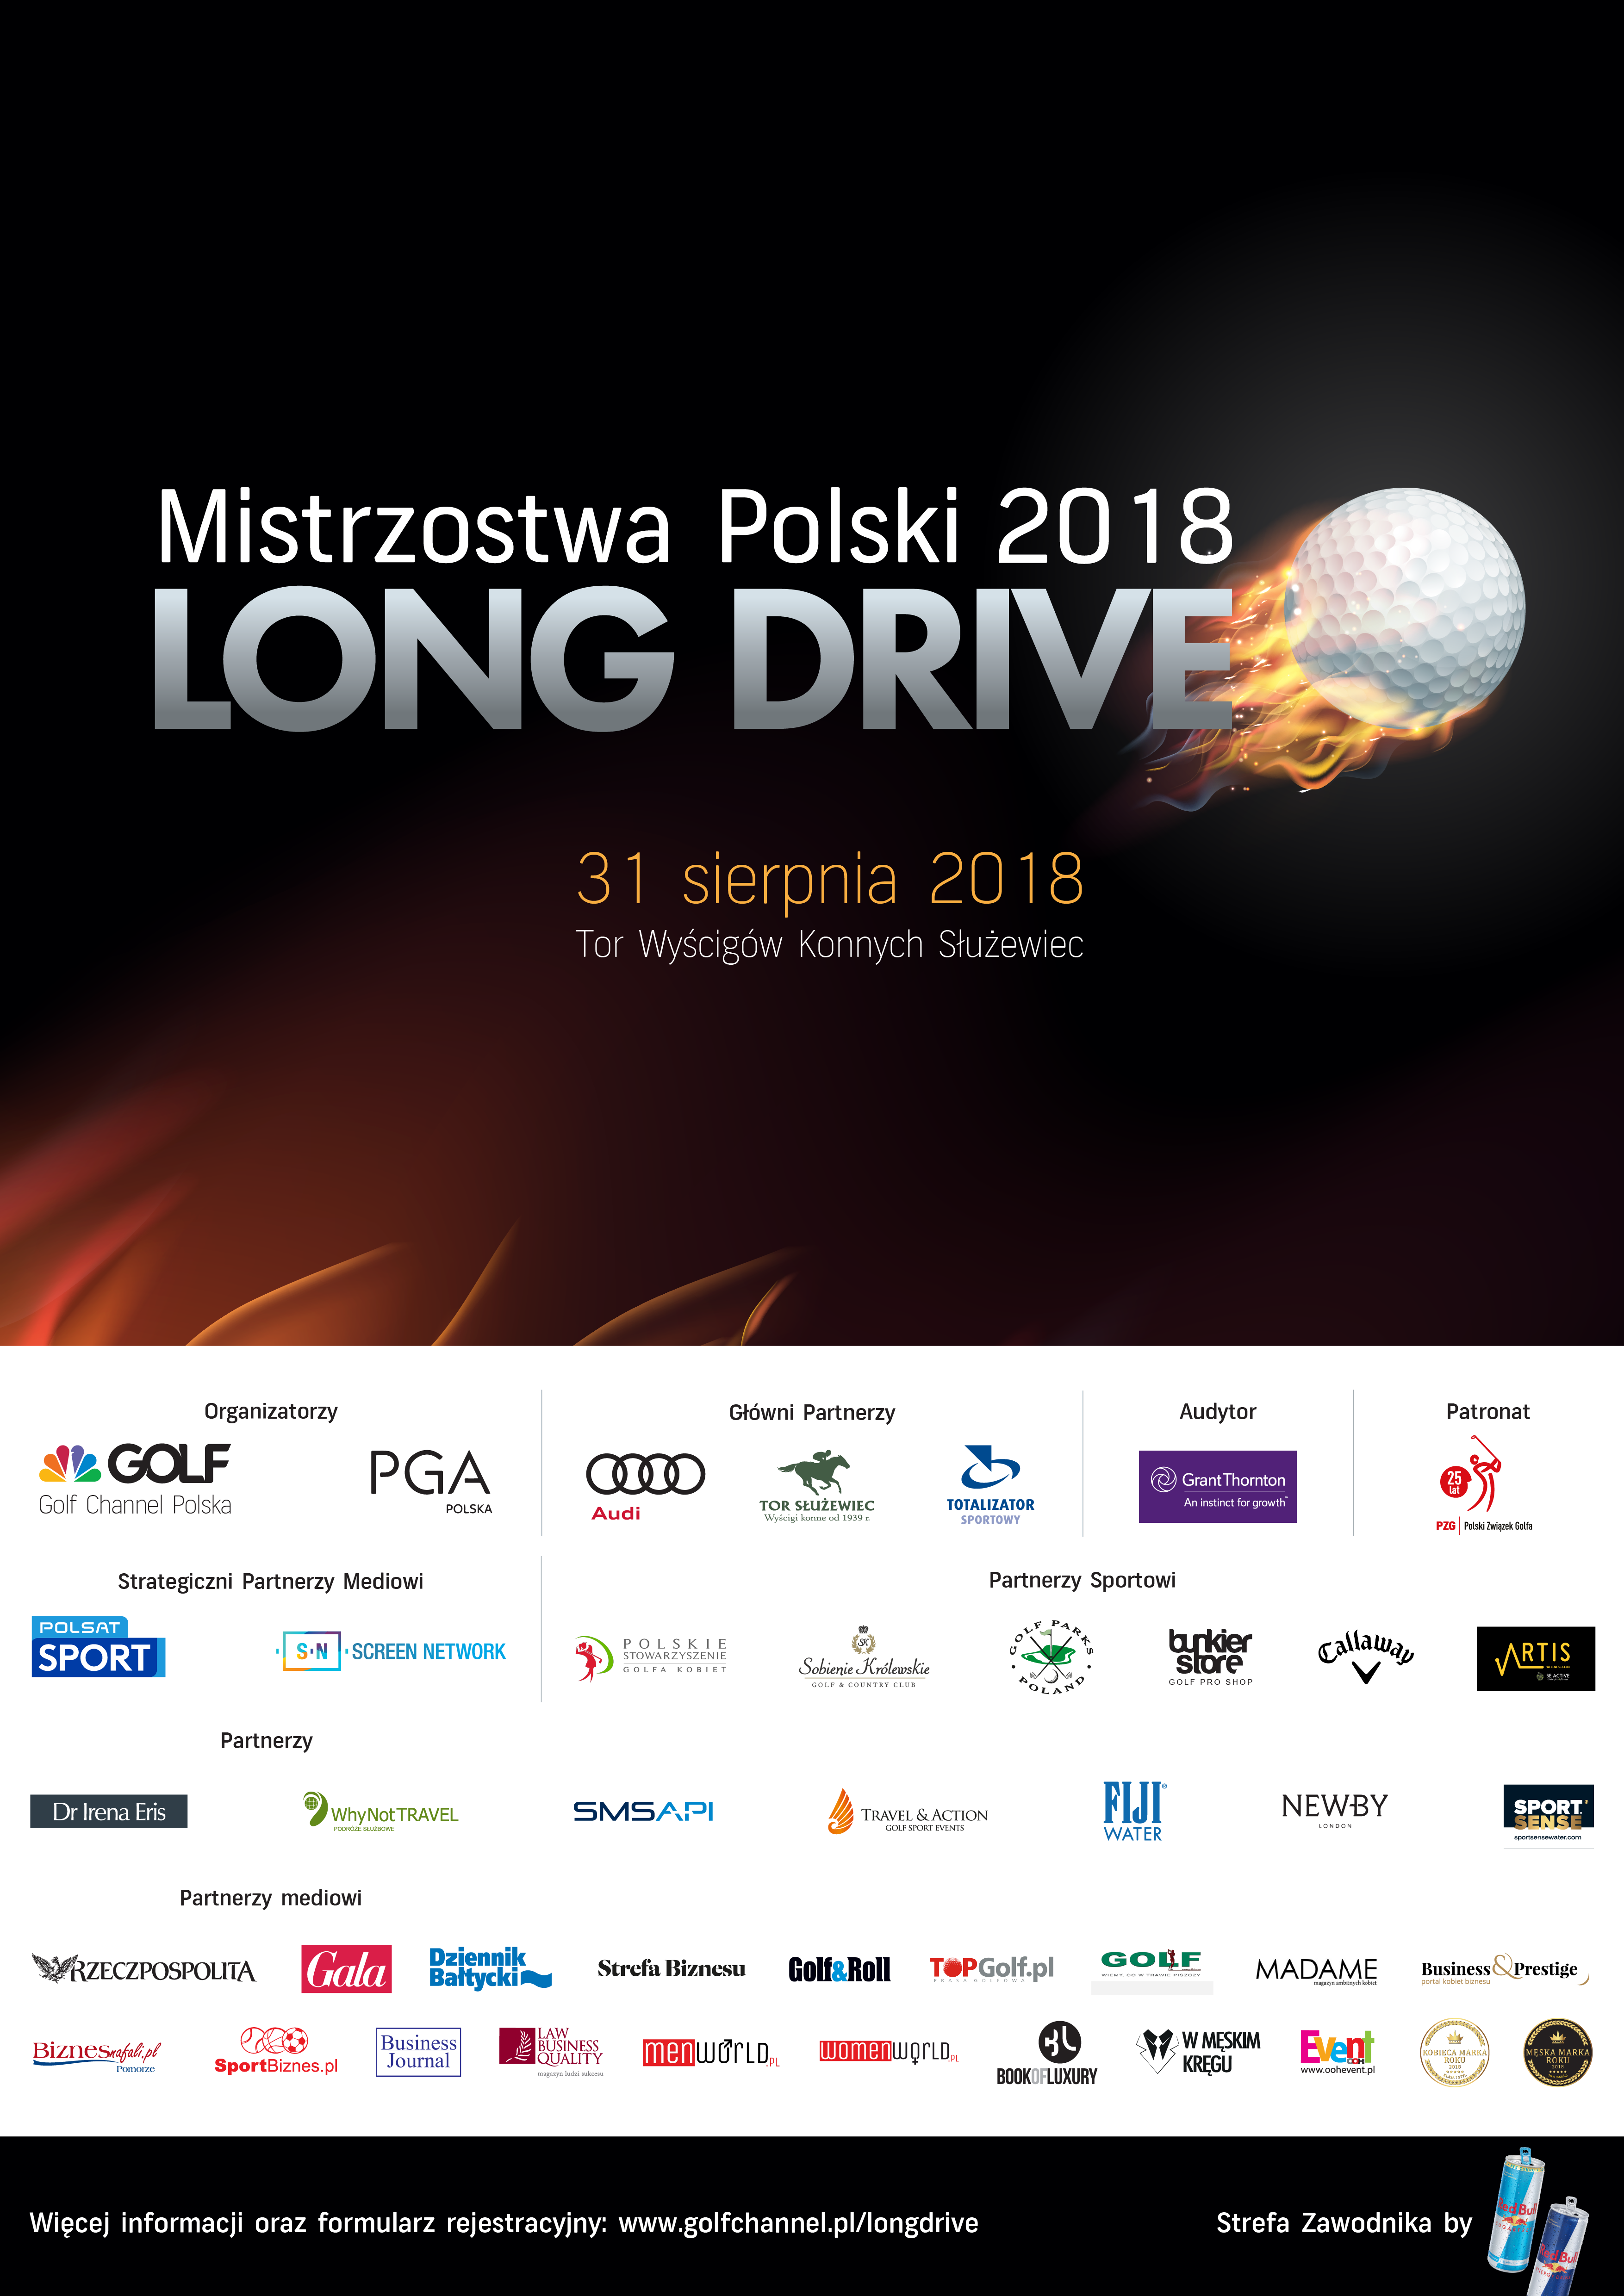 Kobieca Marka Roku Partnerem wydarzenia Mistrzostwa Polski Long Drive 2018, polecamy!